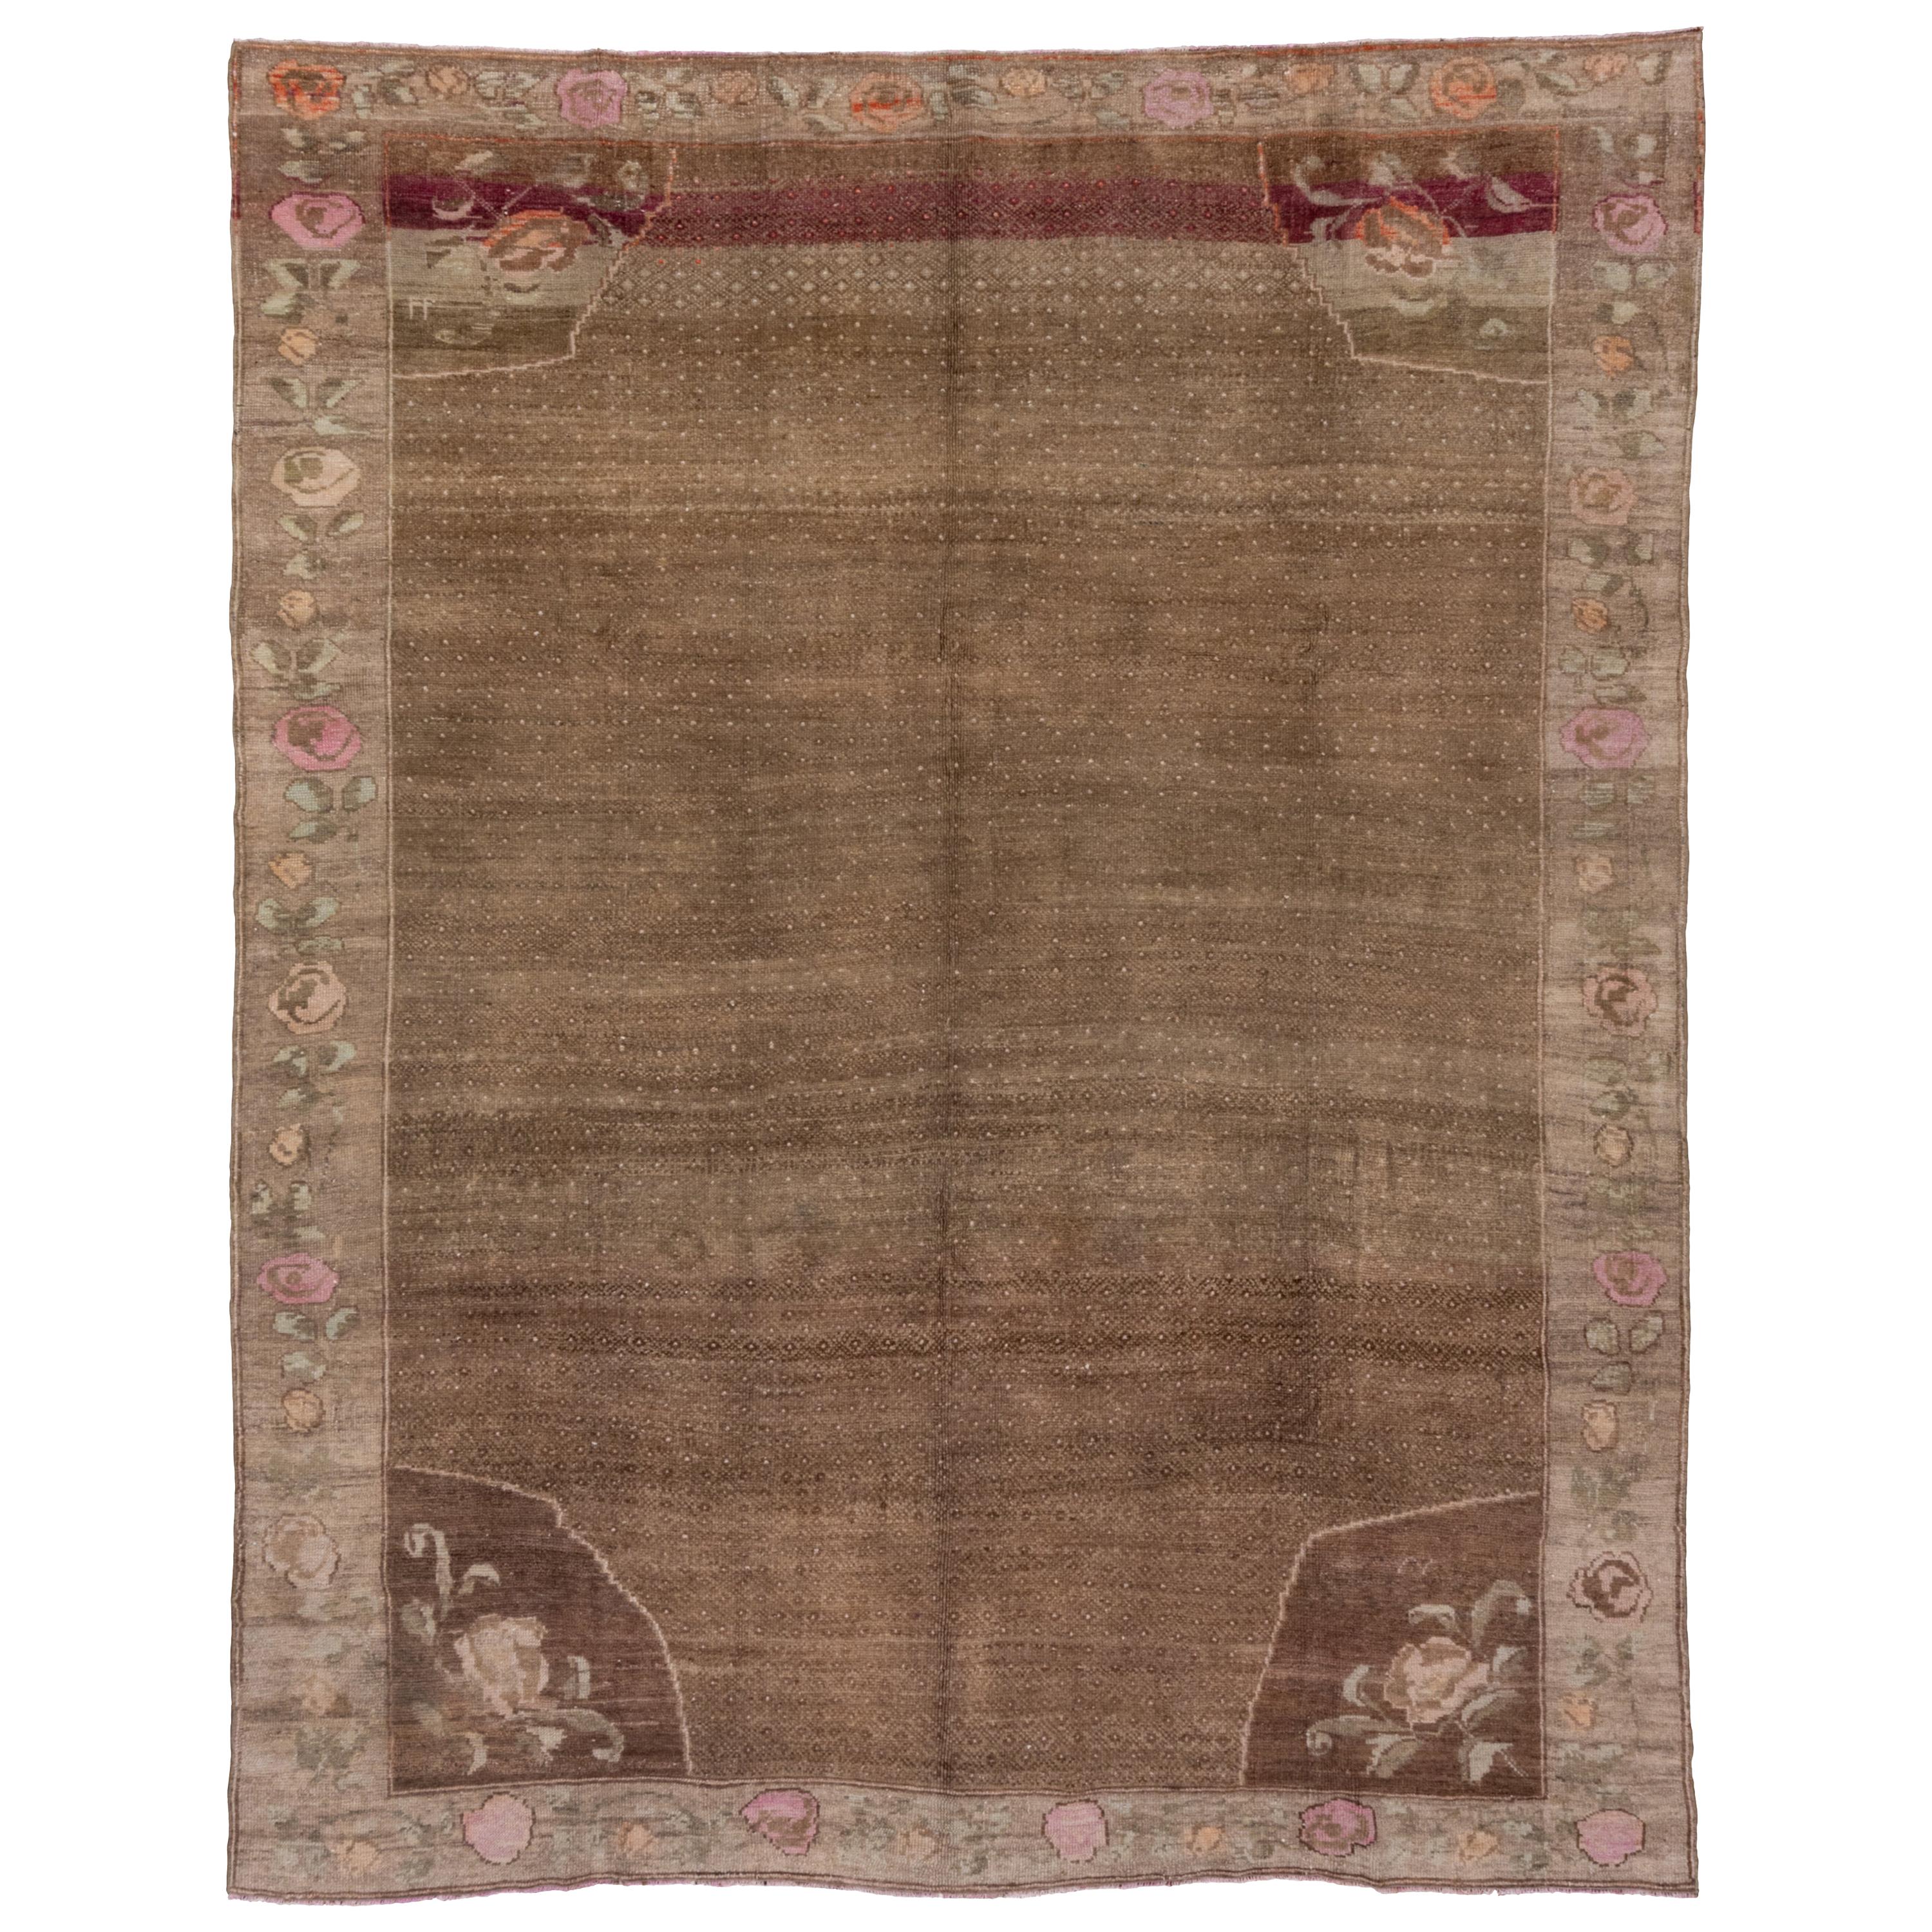 Türkischer Stammeskunst-Kars-Teppich aus den 1950er Jahren, braunes Feld, rosa Akzente